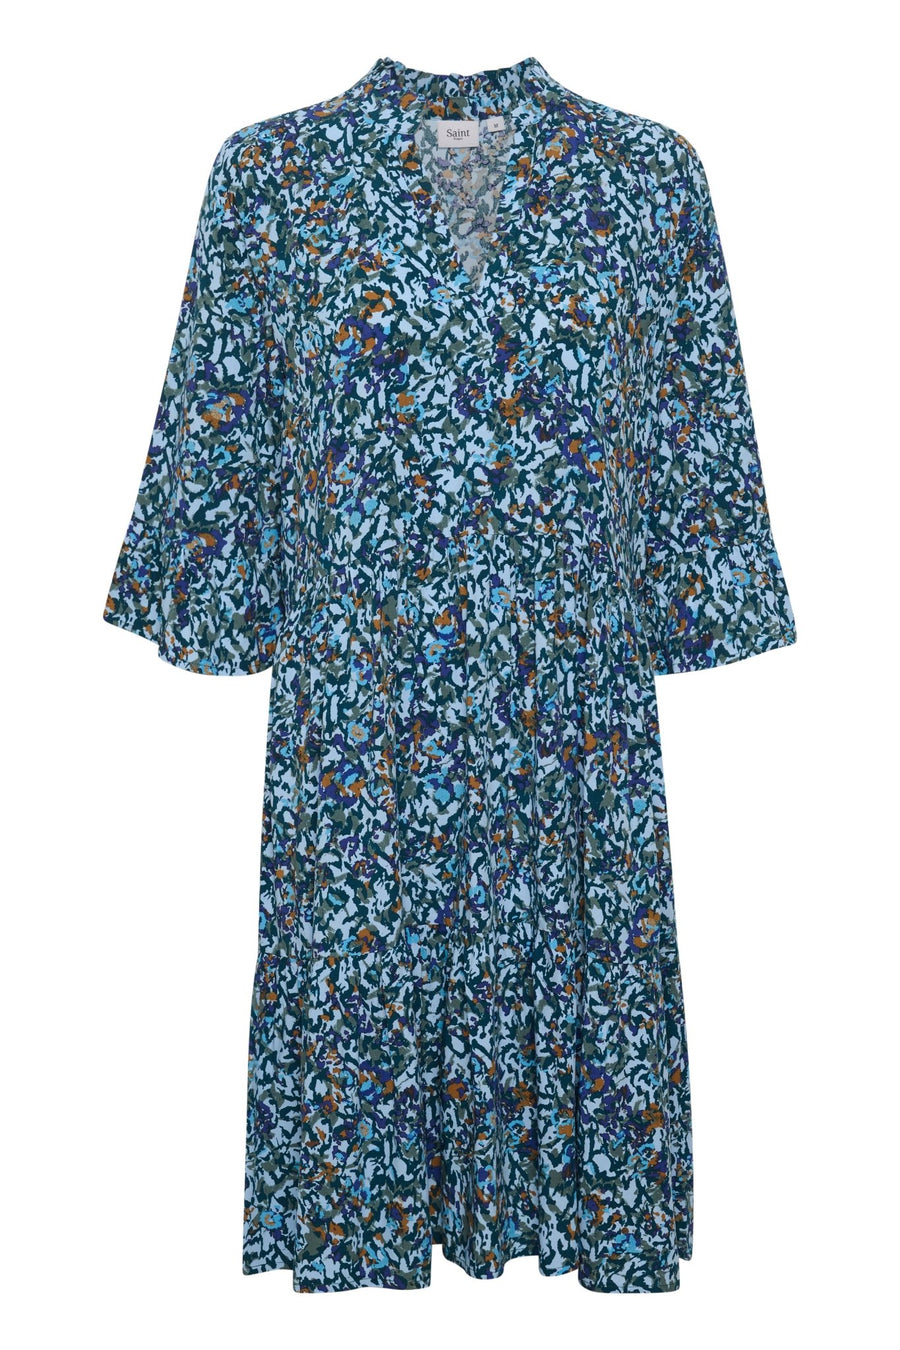 Eda dress - cashmere blue print - Blue Sky Clothing & Lingerie